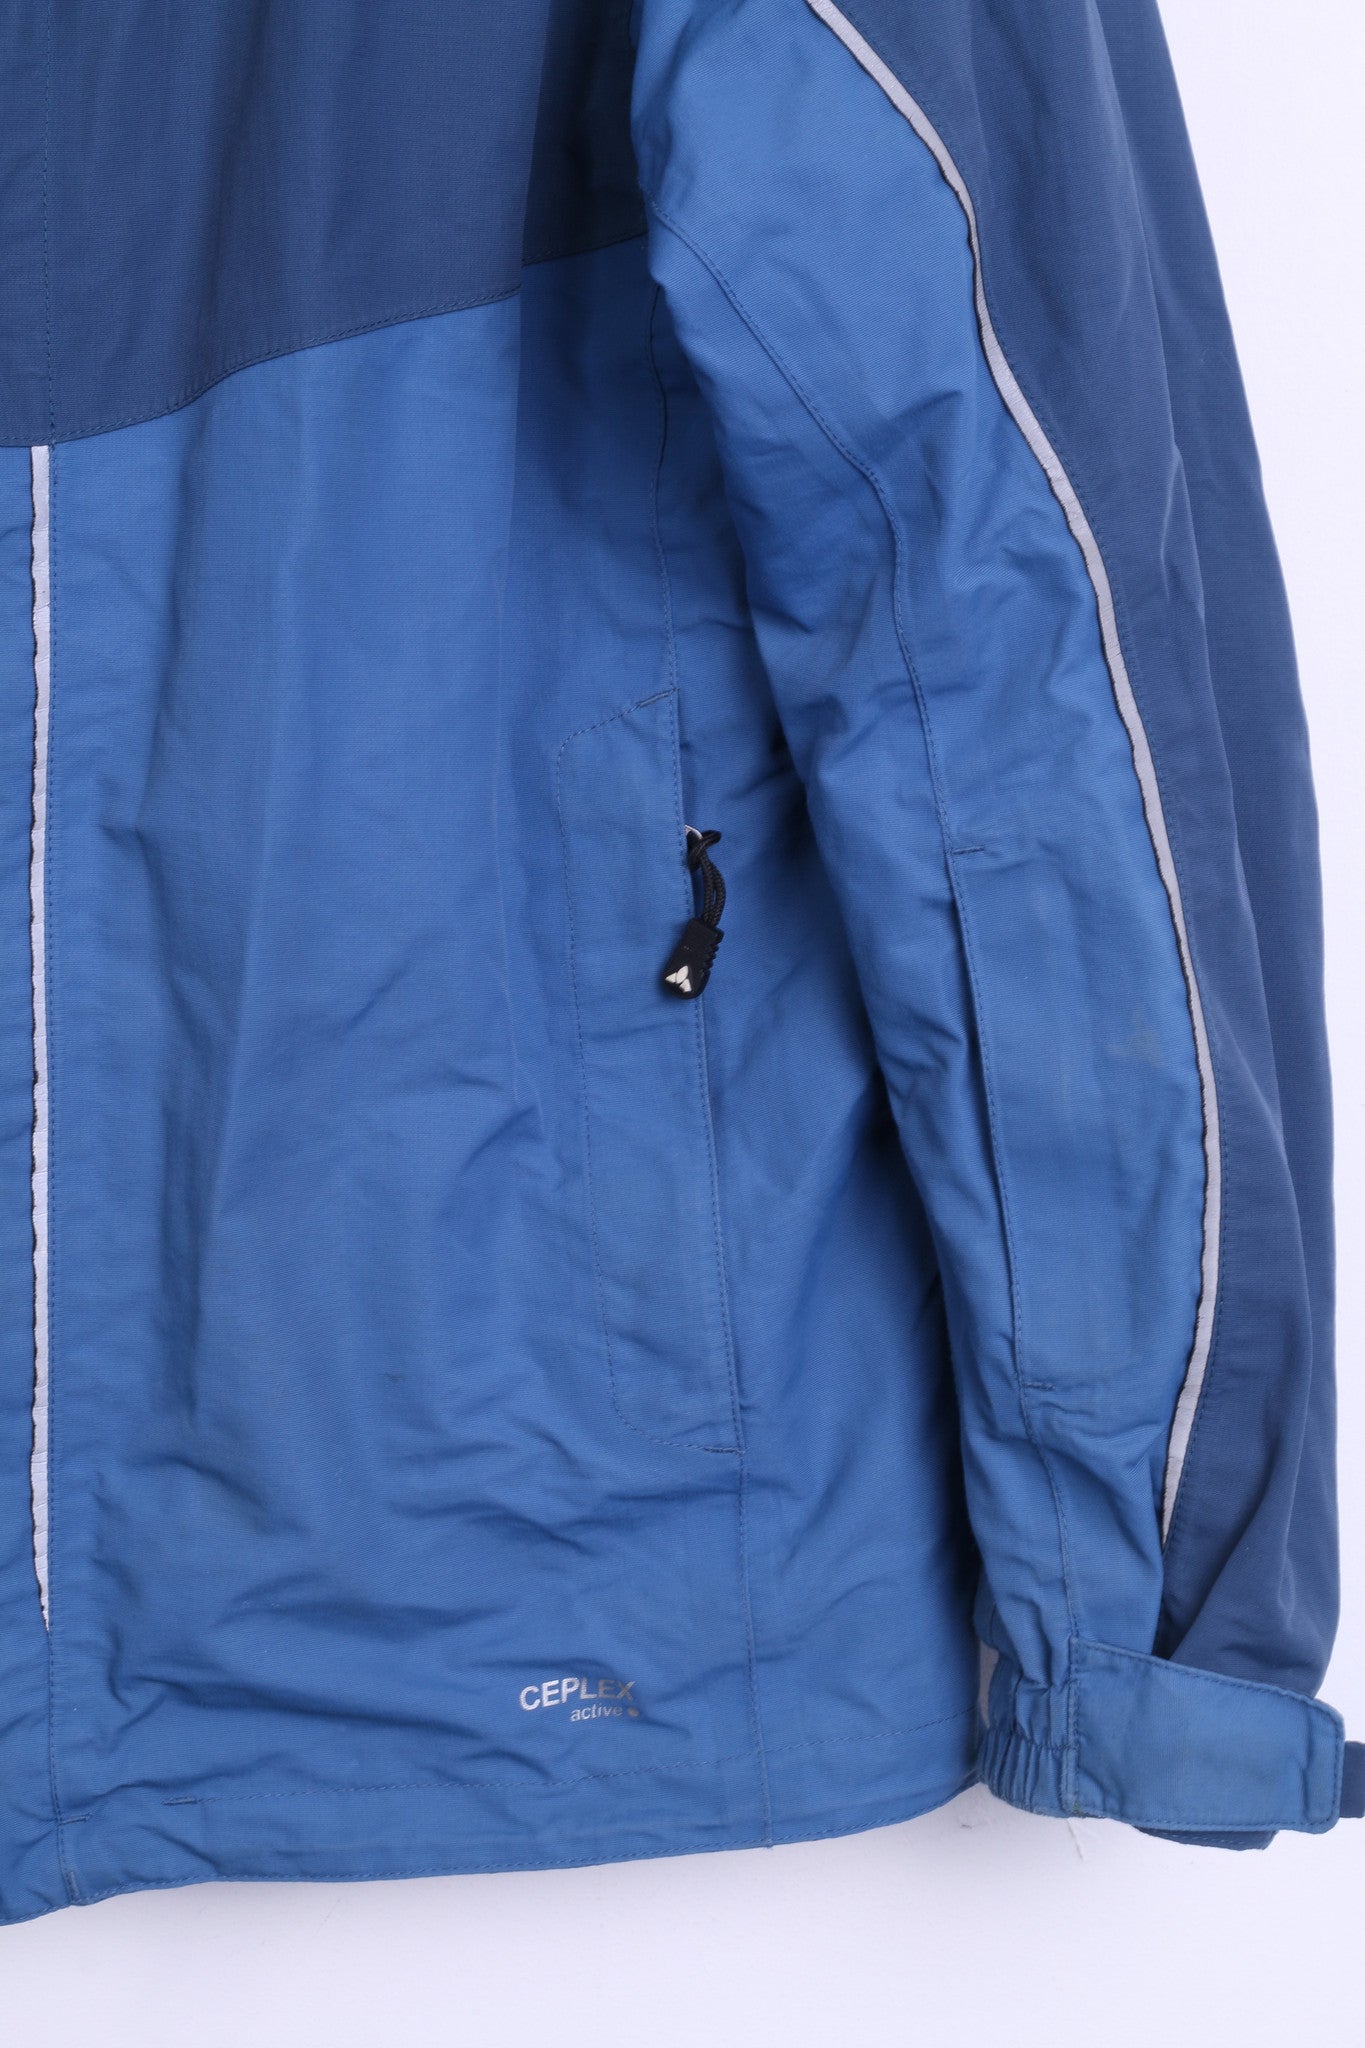 Vaude Womens M Waterproof Jacket Hood Blue Windproof Sport Top - RetrospectClothes